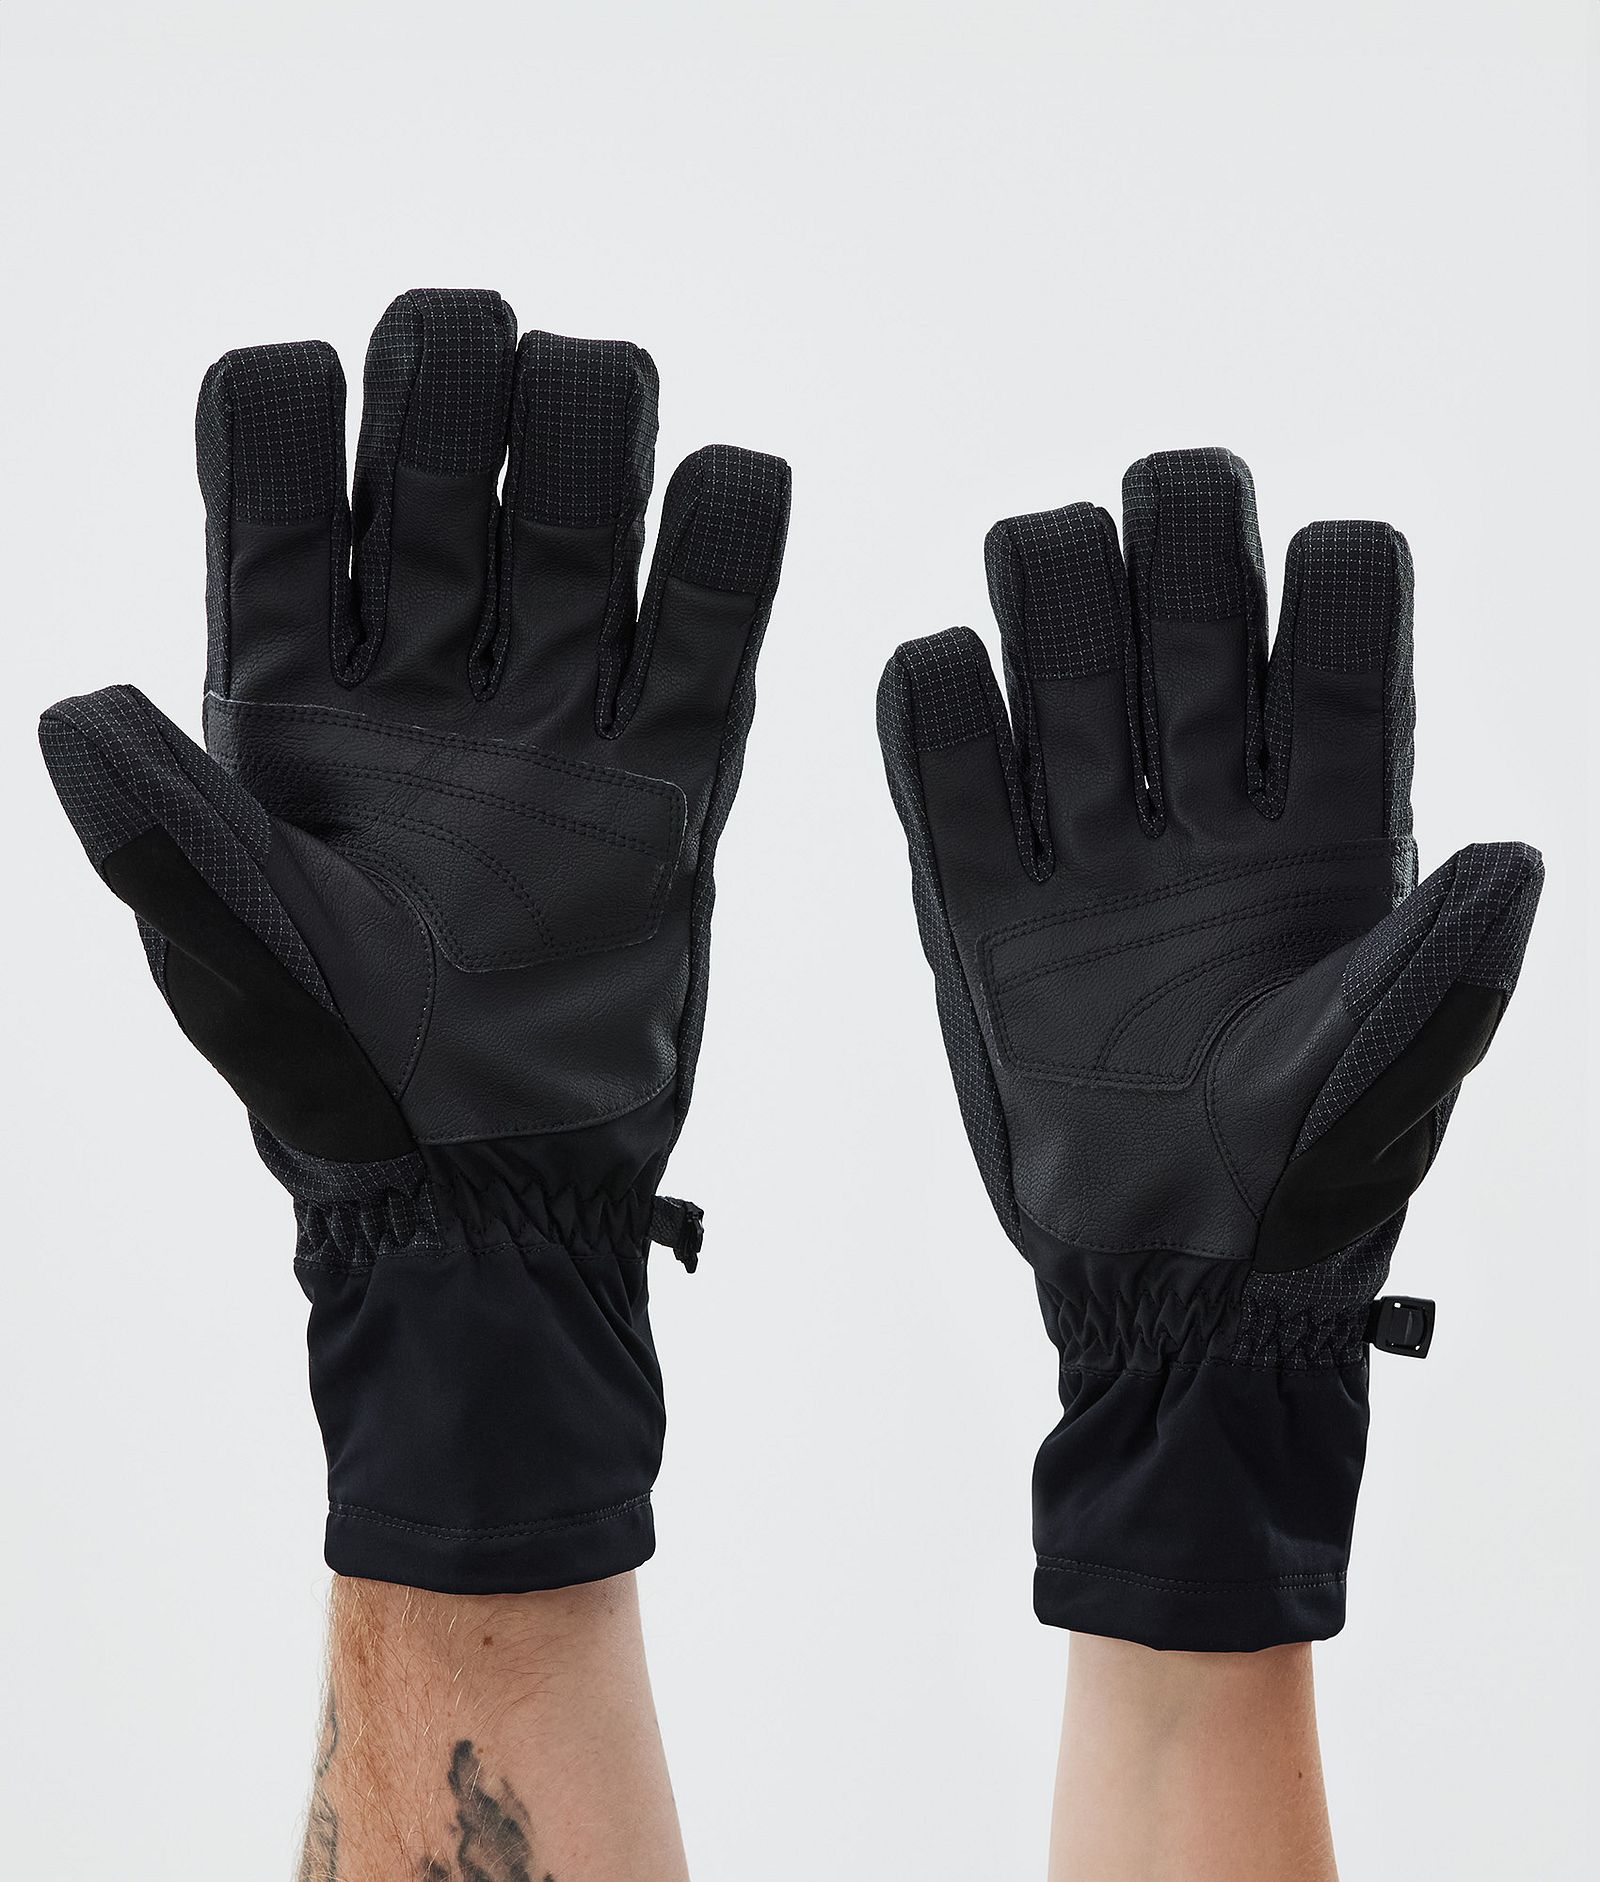 Kilo Ski Gloves Atlantic, Image 2 of 5